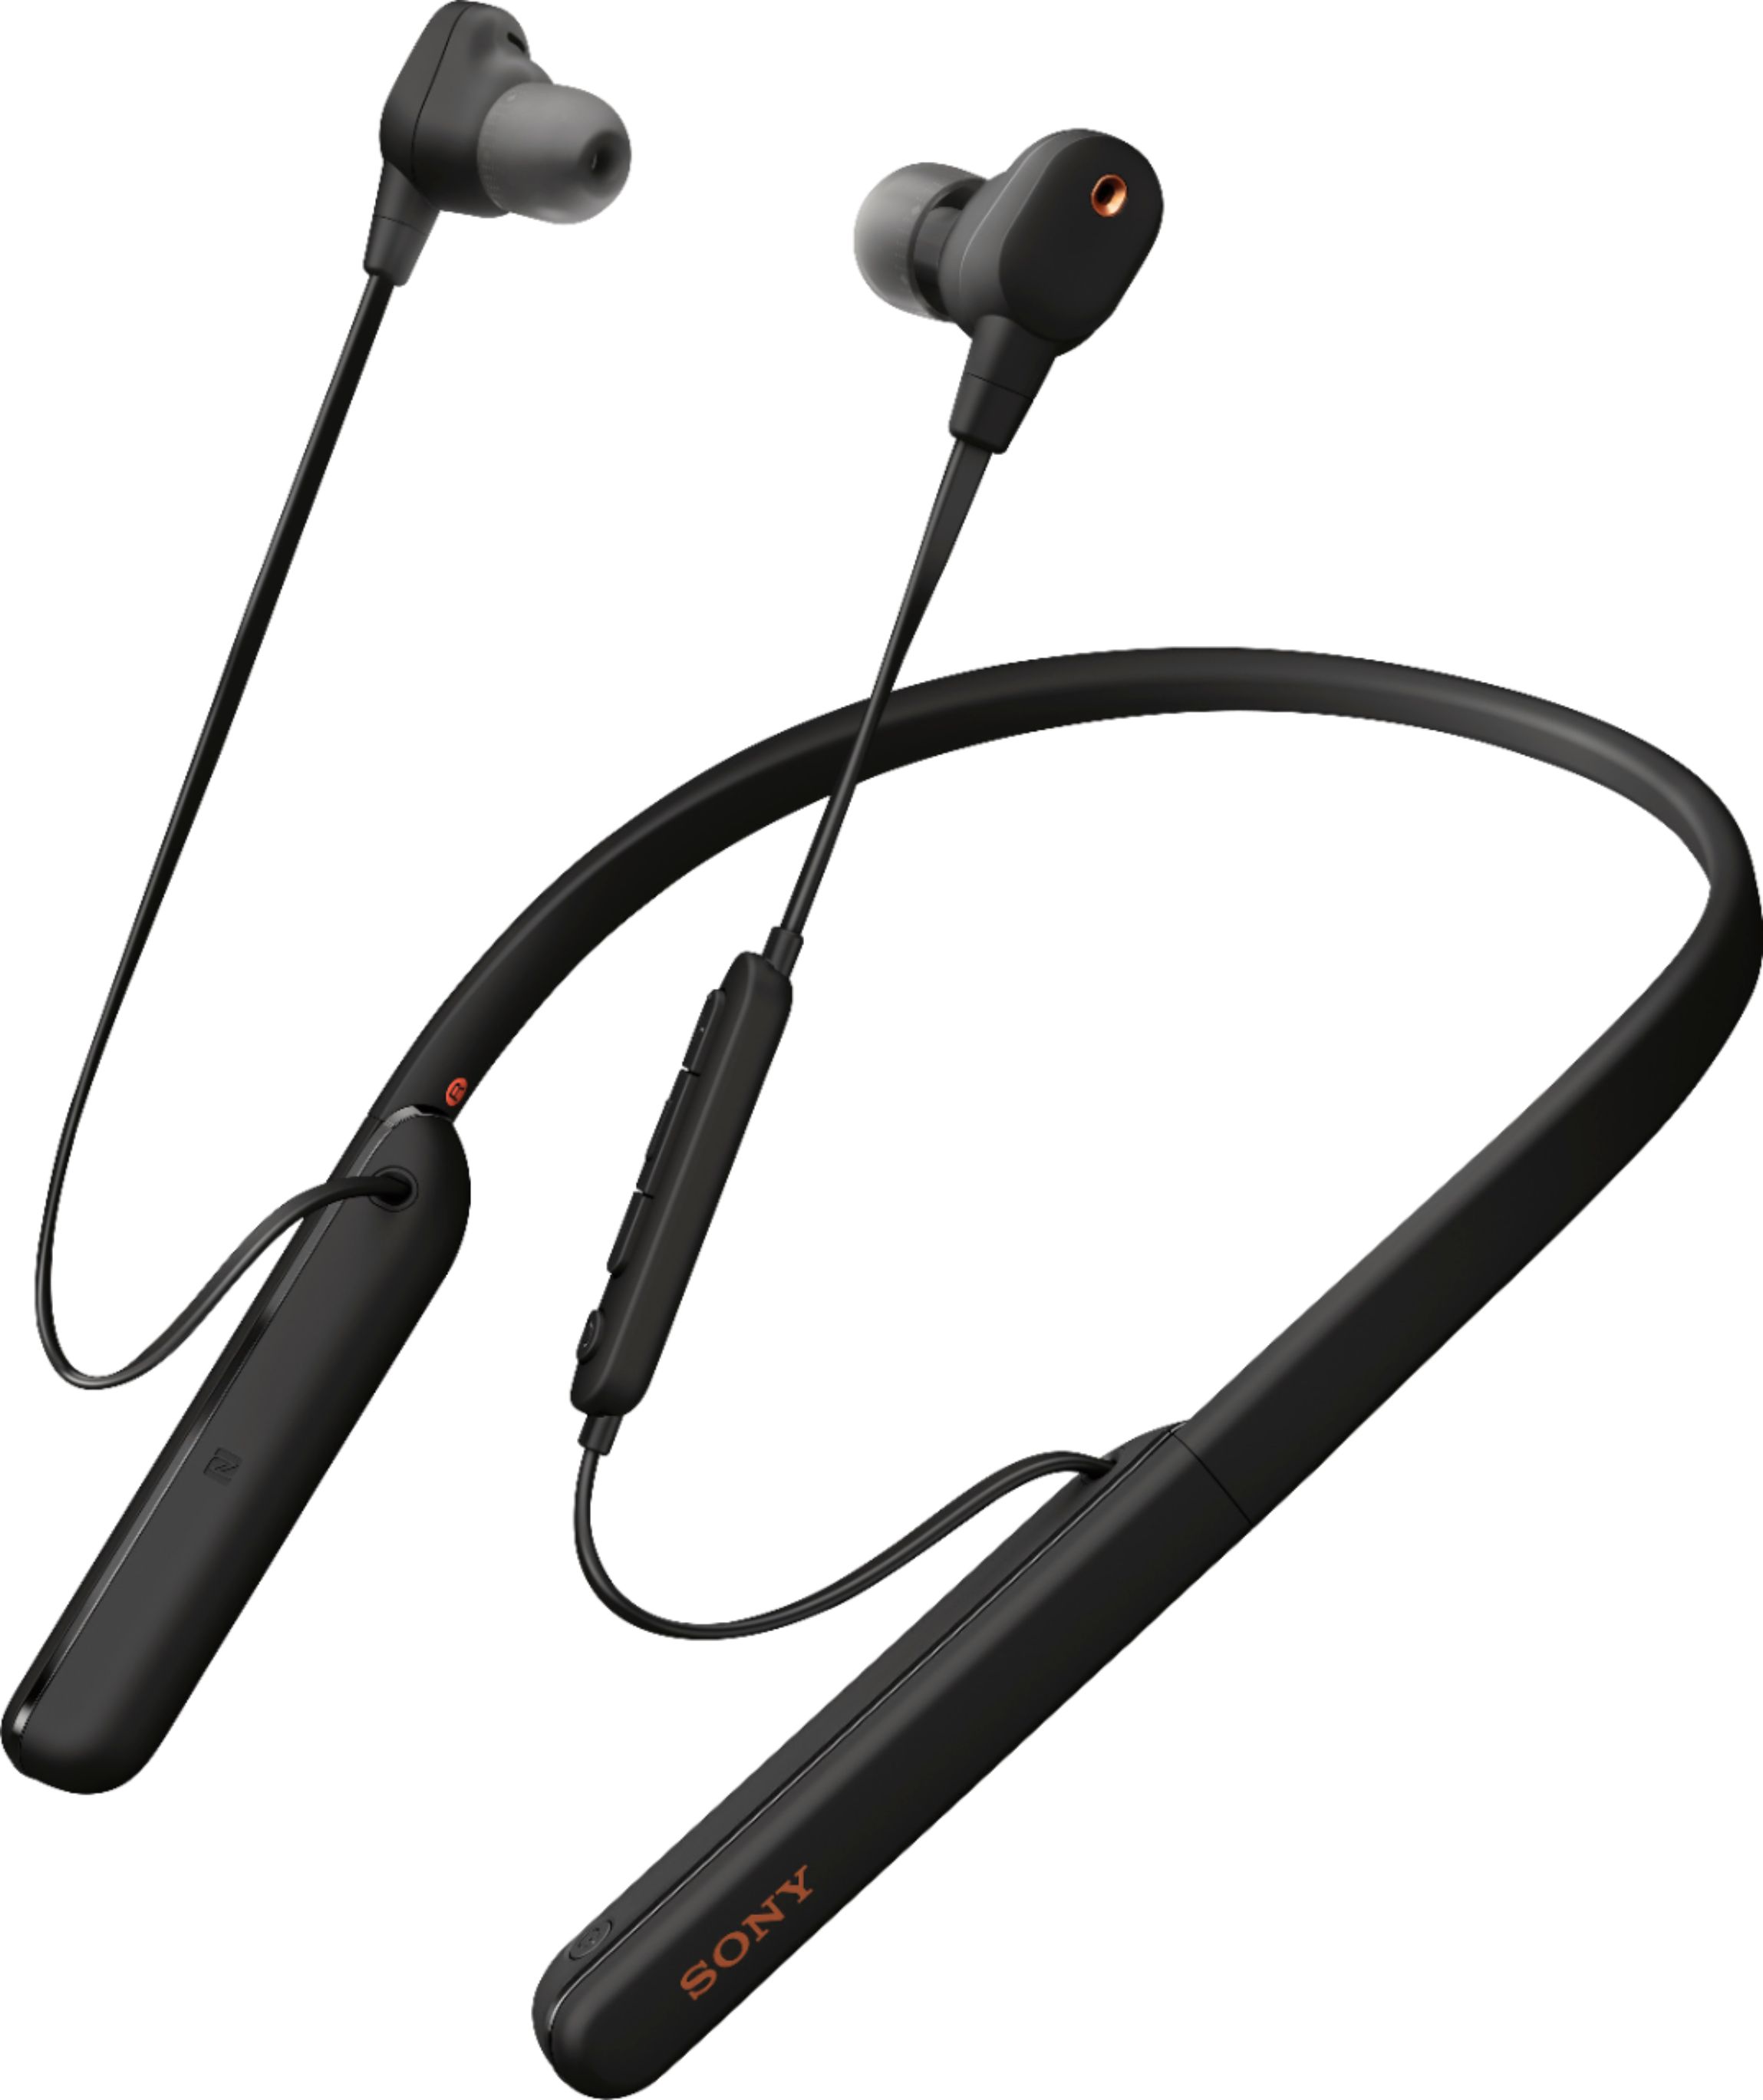 Sony - WI-1000XM2 Wireless Noise-Canceling In-Ear Headphones - Black